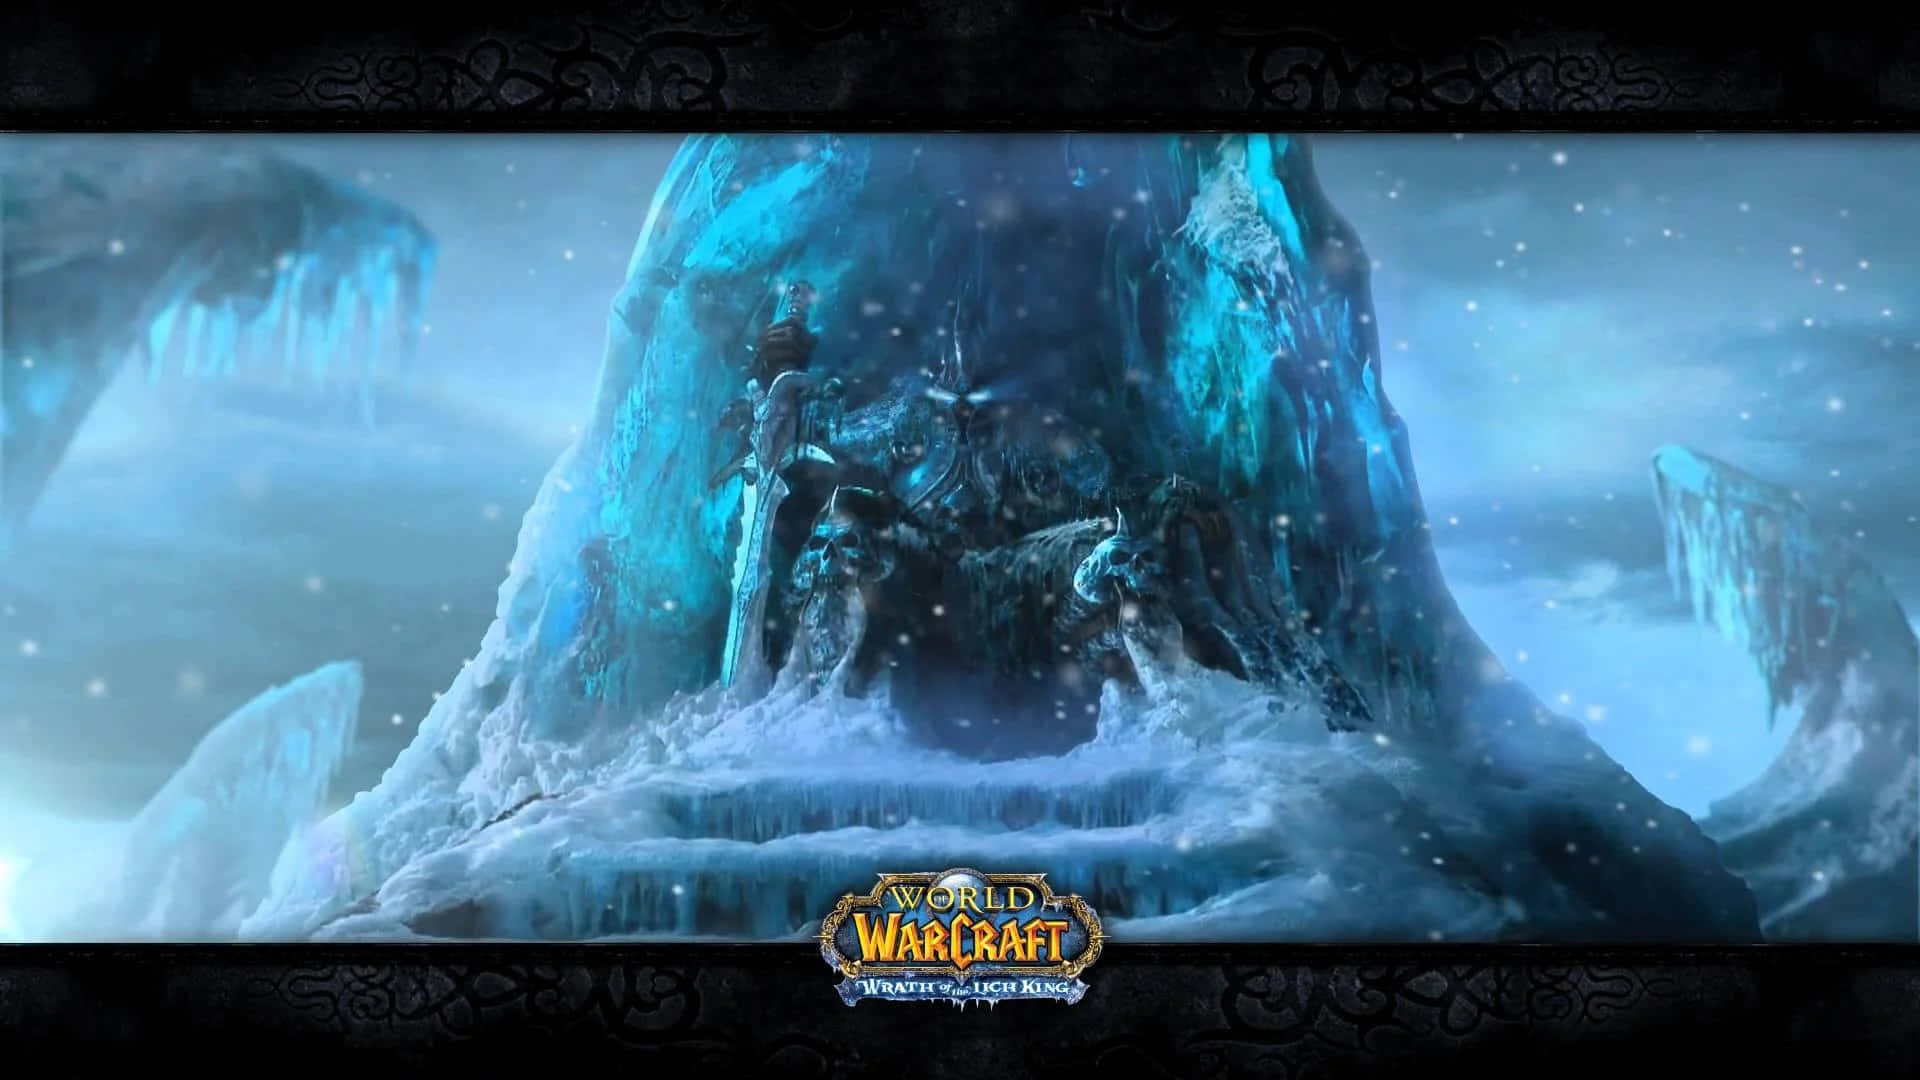 Worldof Warcraft 1920 X 1080 Bakgrund